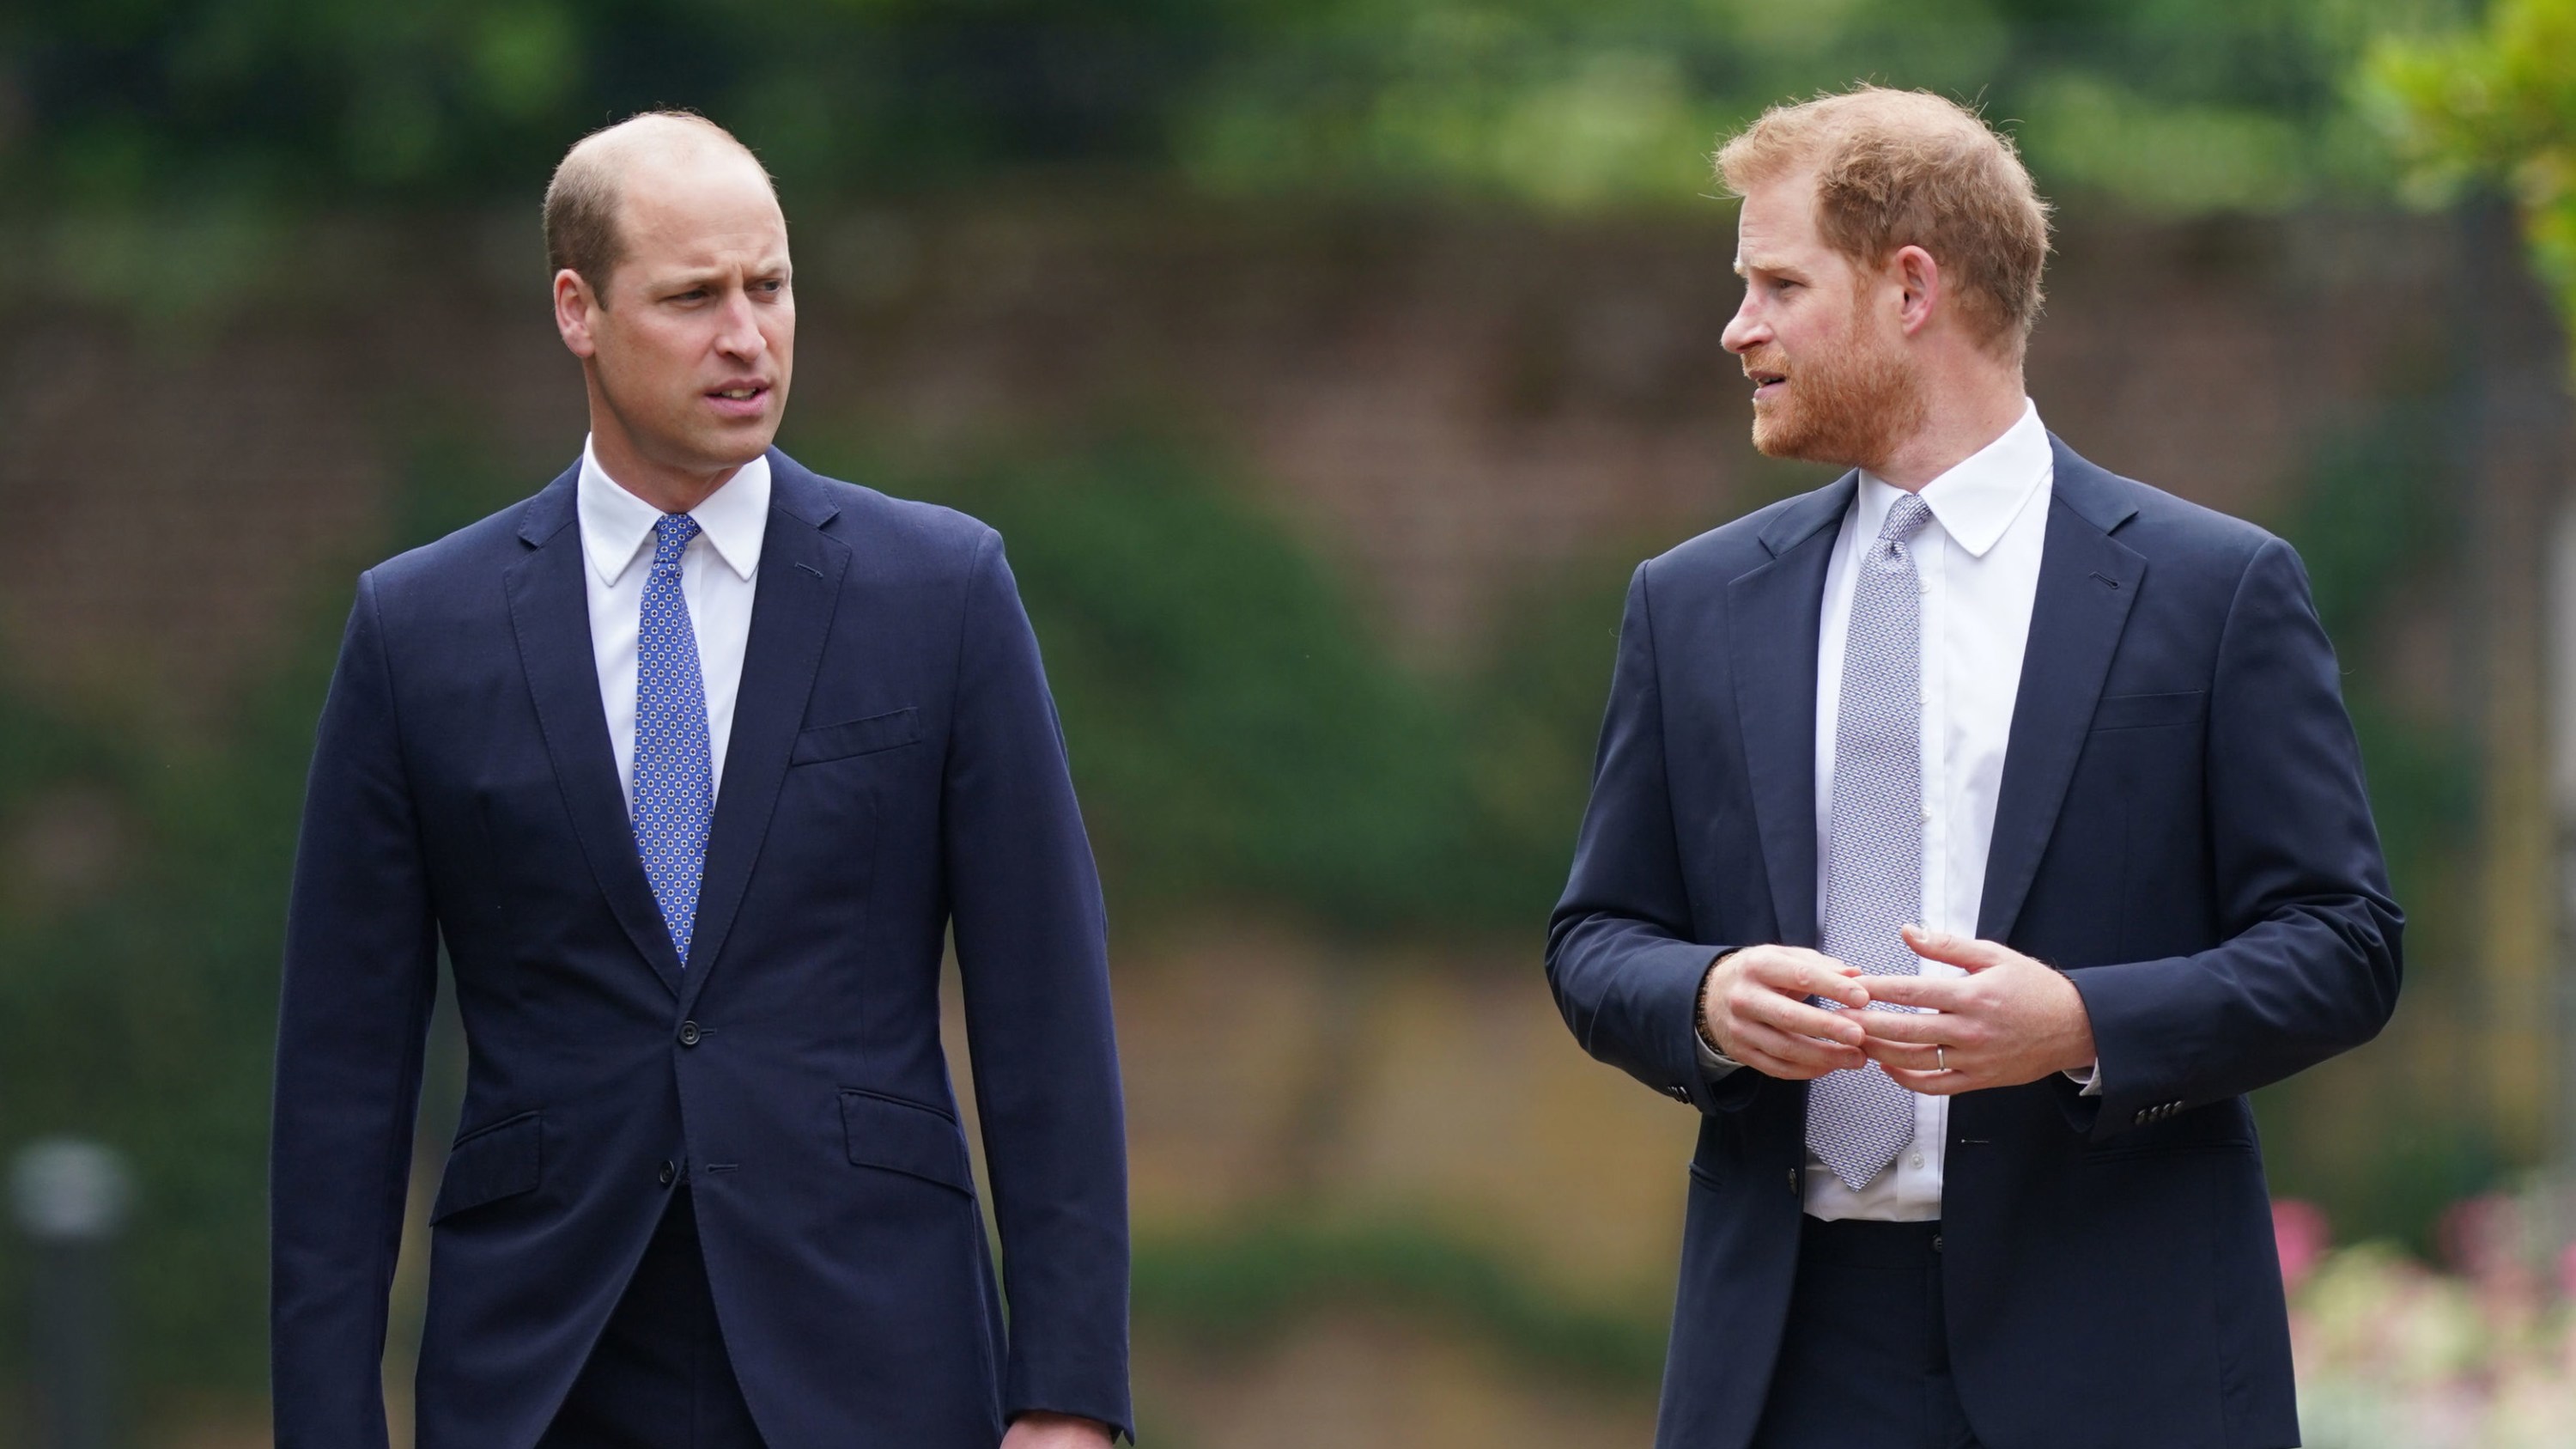 Książę William, książę Cambridge (po lewej) i książę Harry, książę Sussex, przybywają na odsłonięcie zamówionego przez siebie pomnika przedstawiającego ich matkę Dianę, księżną Walii, w Sunken Garden w Pałacu Kensington z okazji jej 60. urodzin 1 lipca 2021 r. w Londynie w Anglii.  Dziś przypadałyby 60. urodziny księżnej Diany, która zmarła w 1997 r. Podczas dzisiejszej ceremonii jej synowie, książę William i książę Harry, odpowiednio książę Cambridge i książę Sussex, odsłonią pomnik ku jej pamięci.